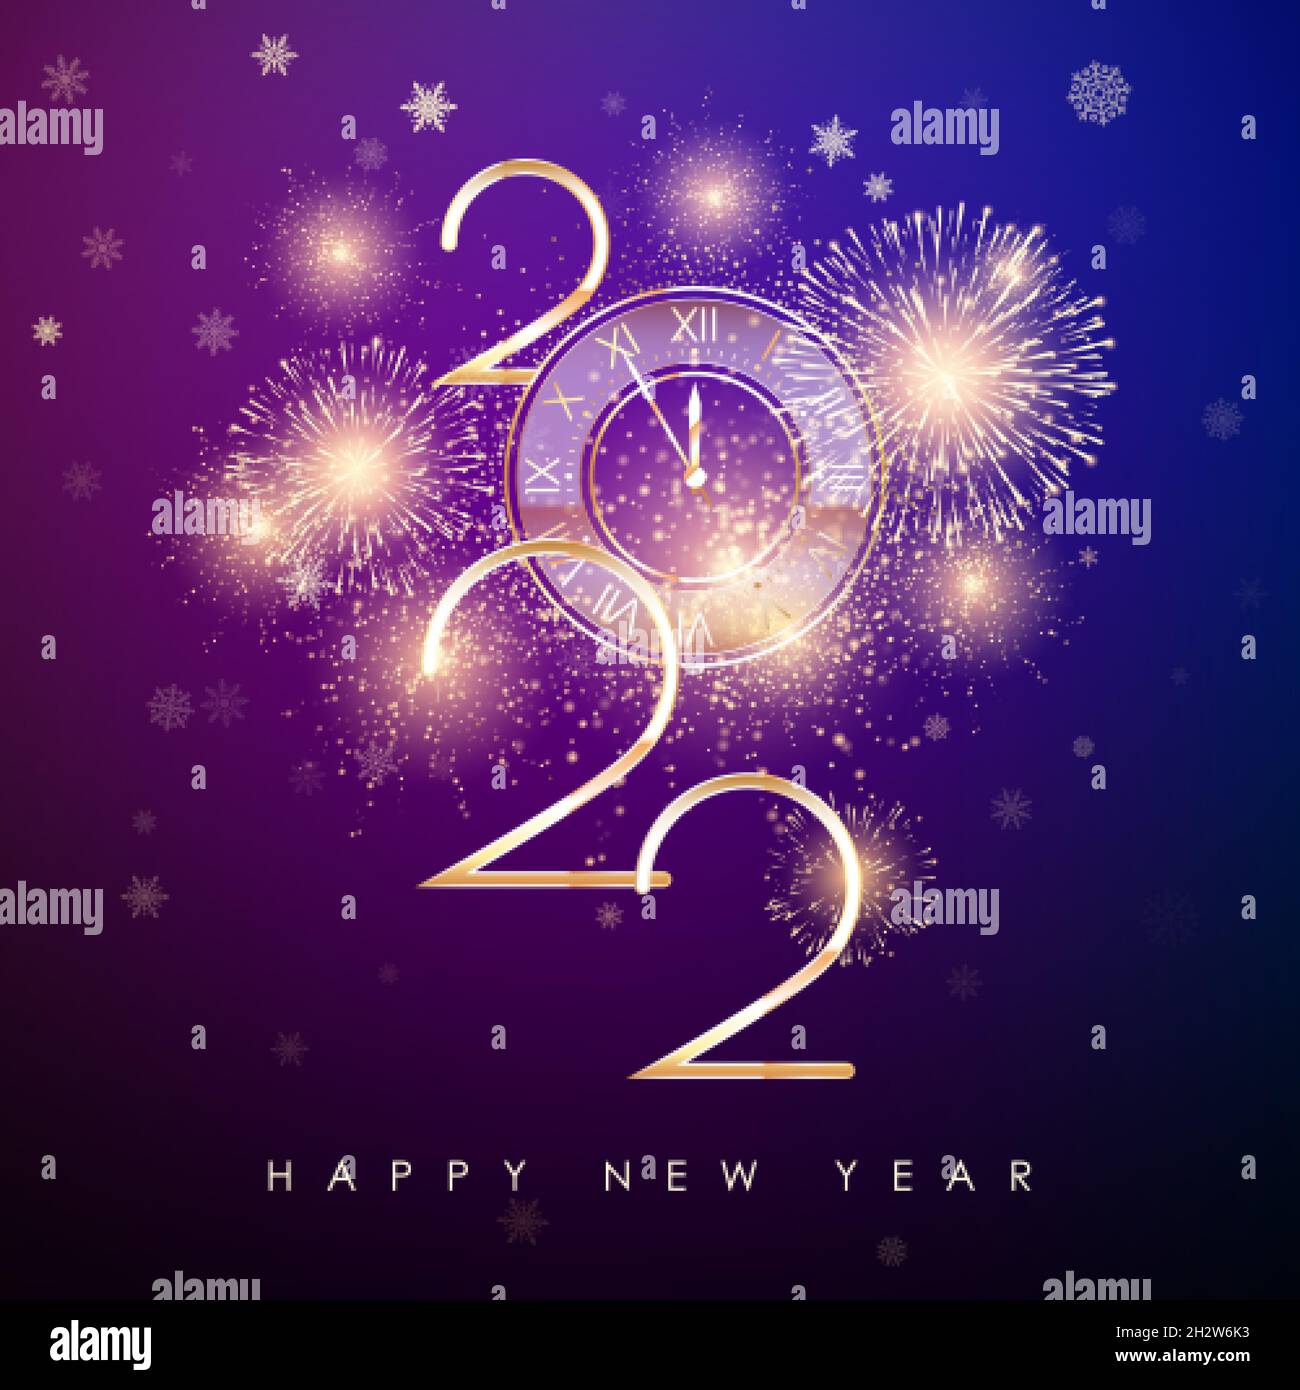 Frohes Neues Jahr 2022. Neues Jahr-Banner mit goldenen Zahlen und Feuerwerk. Grußkarten-Text-Design. Vektorgrafik Stock Vektor